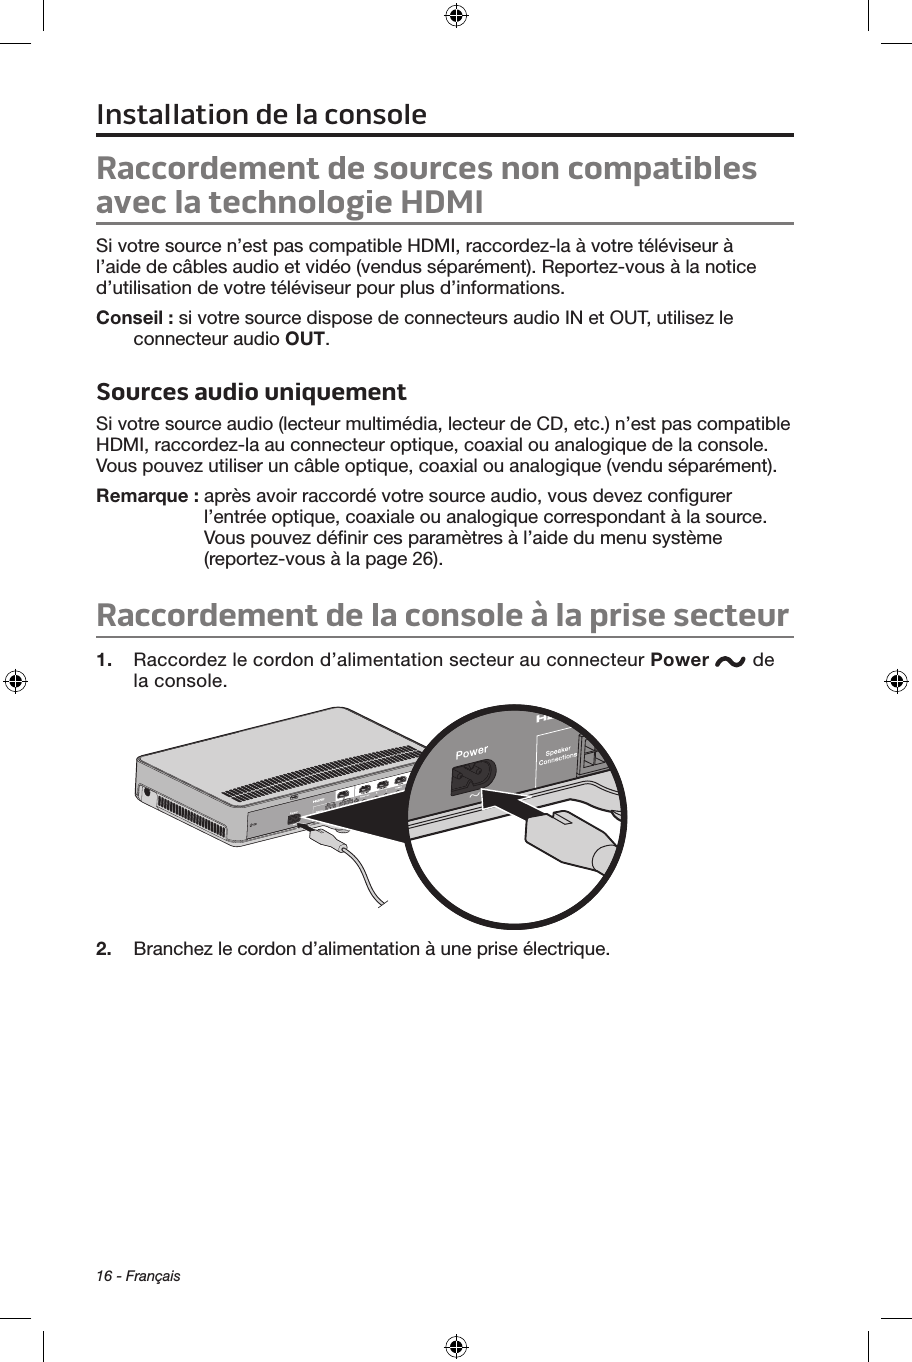 16 - FrançaisRaccordement de sources non compatibles avec la technologie HDMISi votre source n’est pas compatible HDMI, raccordez‑la à votre téléviseur à l’aide de câbles audio et vidéo (vendus séparément). Reportez‑vous à la notice d’utilisation de votre téléviseur pour plus d’informations. Conseil : si votre source dispose de connecteurs audio IN et OUT, utilisez le connecteur audio OUT.Sources audio uniquementSi votre source audio (lecteur multimédia, lecteur de CD, etc.) n’est pas compatible HDMI, raccordez‑la au connecteur optique, coaxial ou analogique de la console. Vous pouvez utiliser un câble optique, coaxial ou analogique (vendu séparément).Remarque :   après avoir raccordé votre source audio, vous devez conﬁgurer l’entrée optique, coaxiale ou analogique correspondant à la source. Vous pouvez déﬁnir ces paramètres à l’aide du menu système (reportez‑vous à la page 26).Raccordement de la console à la prise secteur1.  Raccordez le cordon d’alimentation secteur au connecteur Power  de la console.2.  Branchez le cordon d’alimentation à une prise électrique. Installation de la console